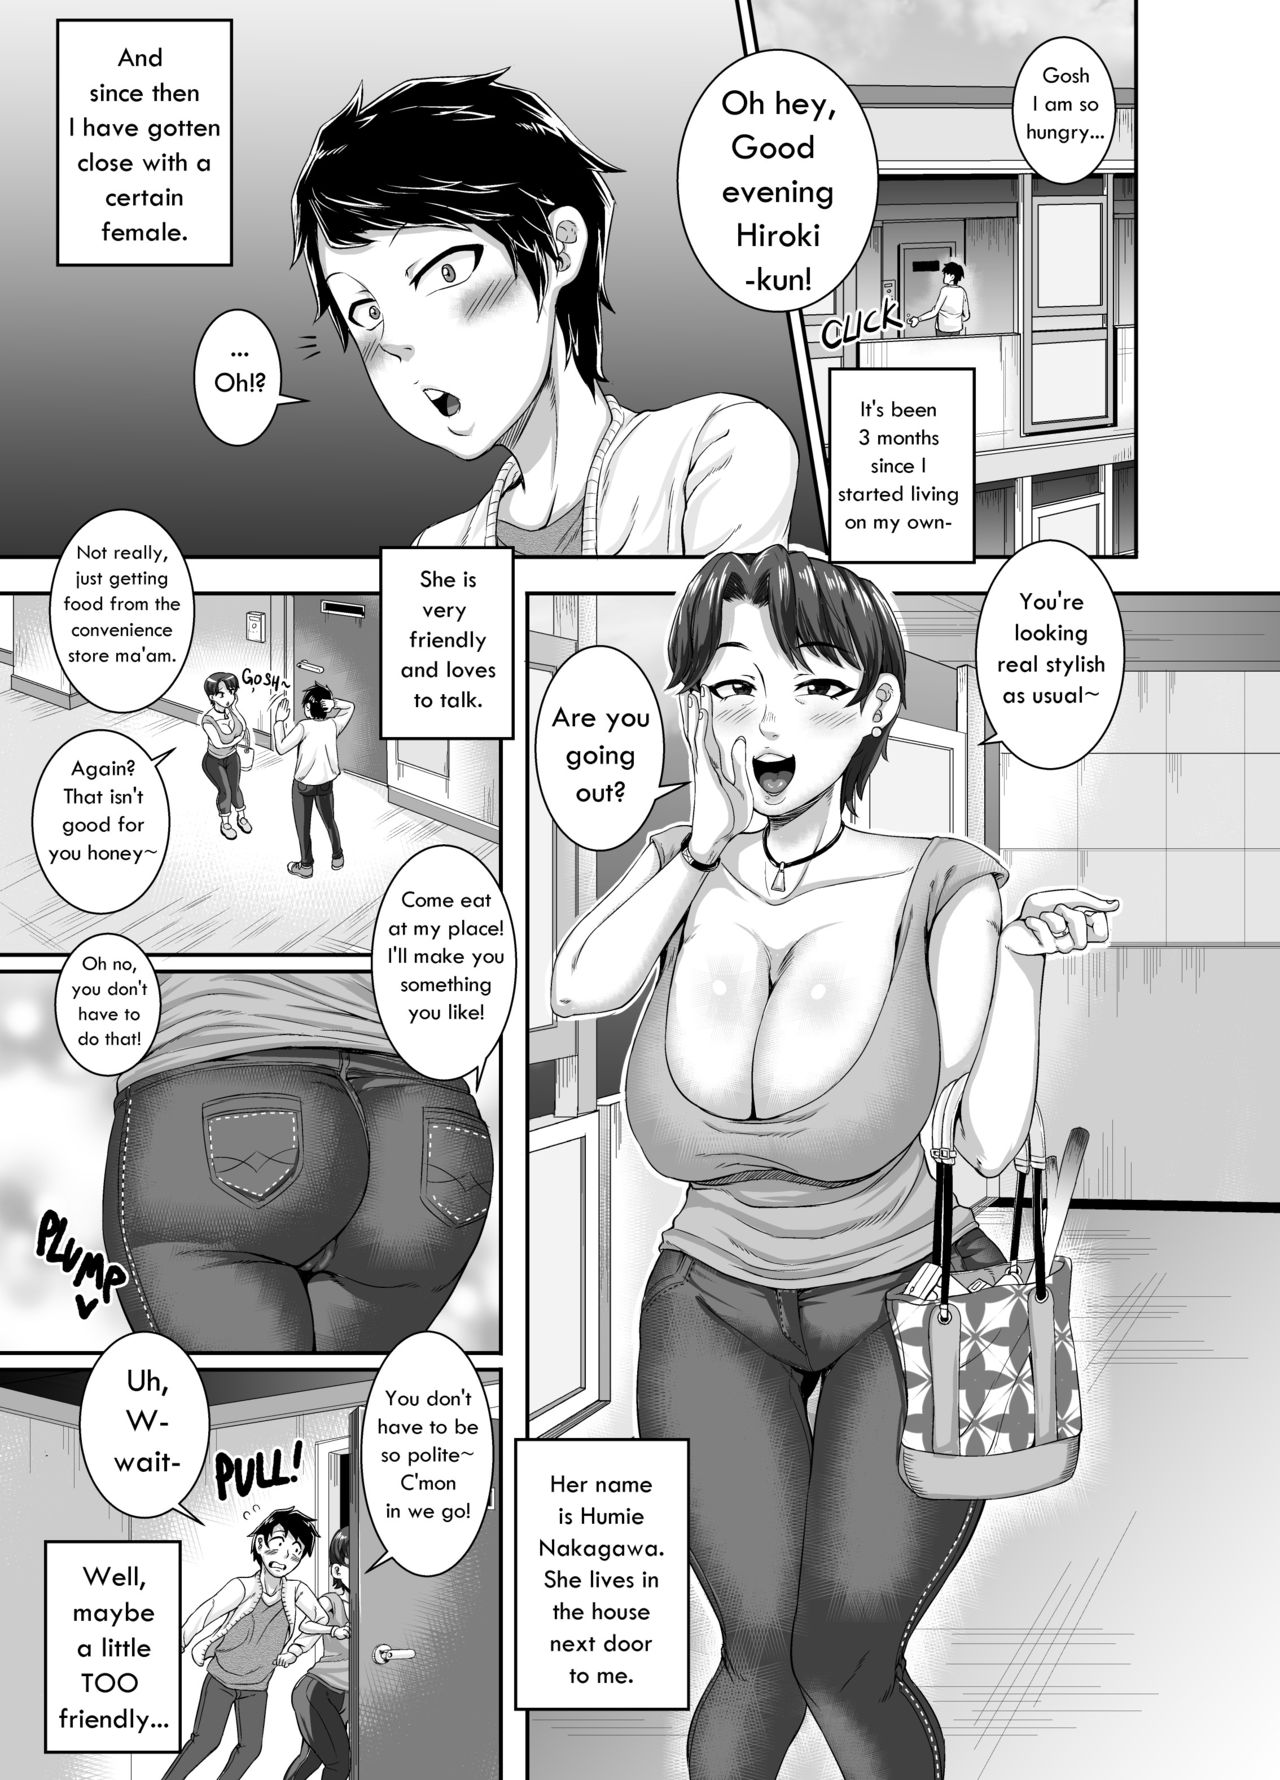 Mom Next Door Porn Comic - Seduction From Next Door [Juna Juna Juice] - Free Hentai Manga, Adult  Webtoon, Doujinshi Manga and Mature Comics